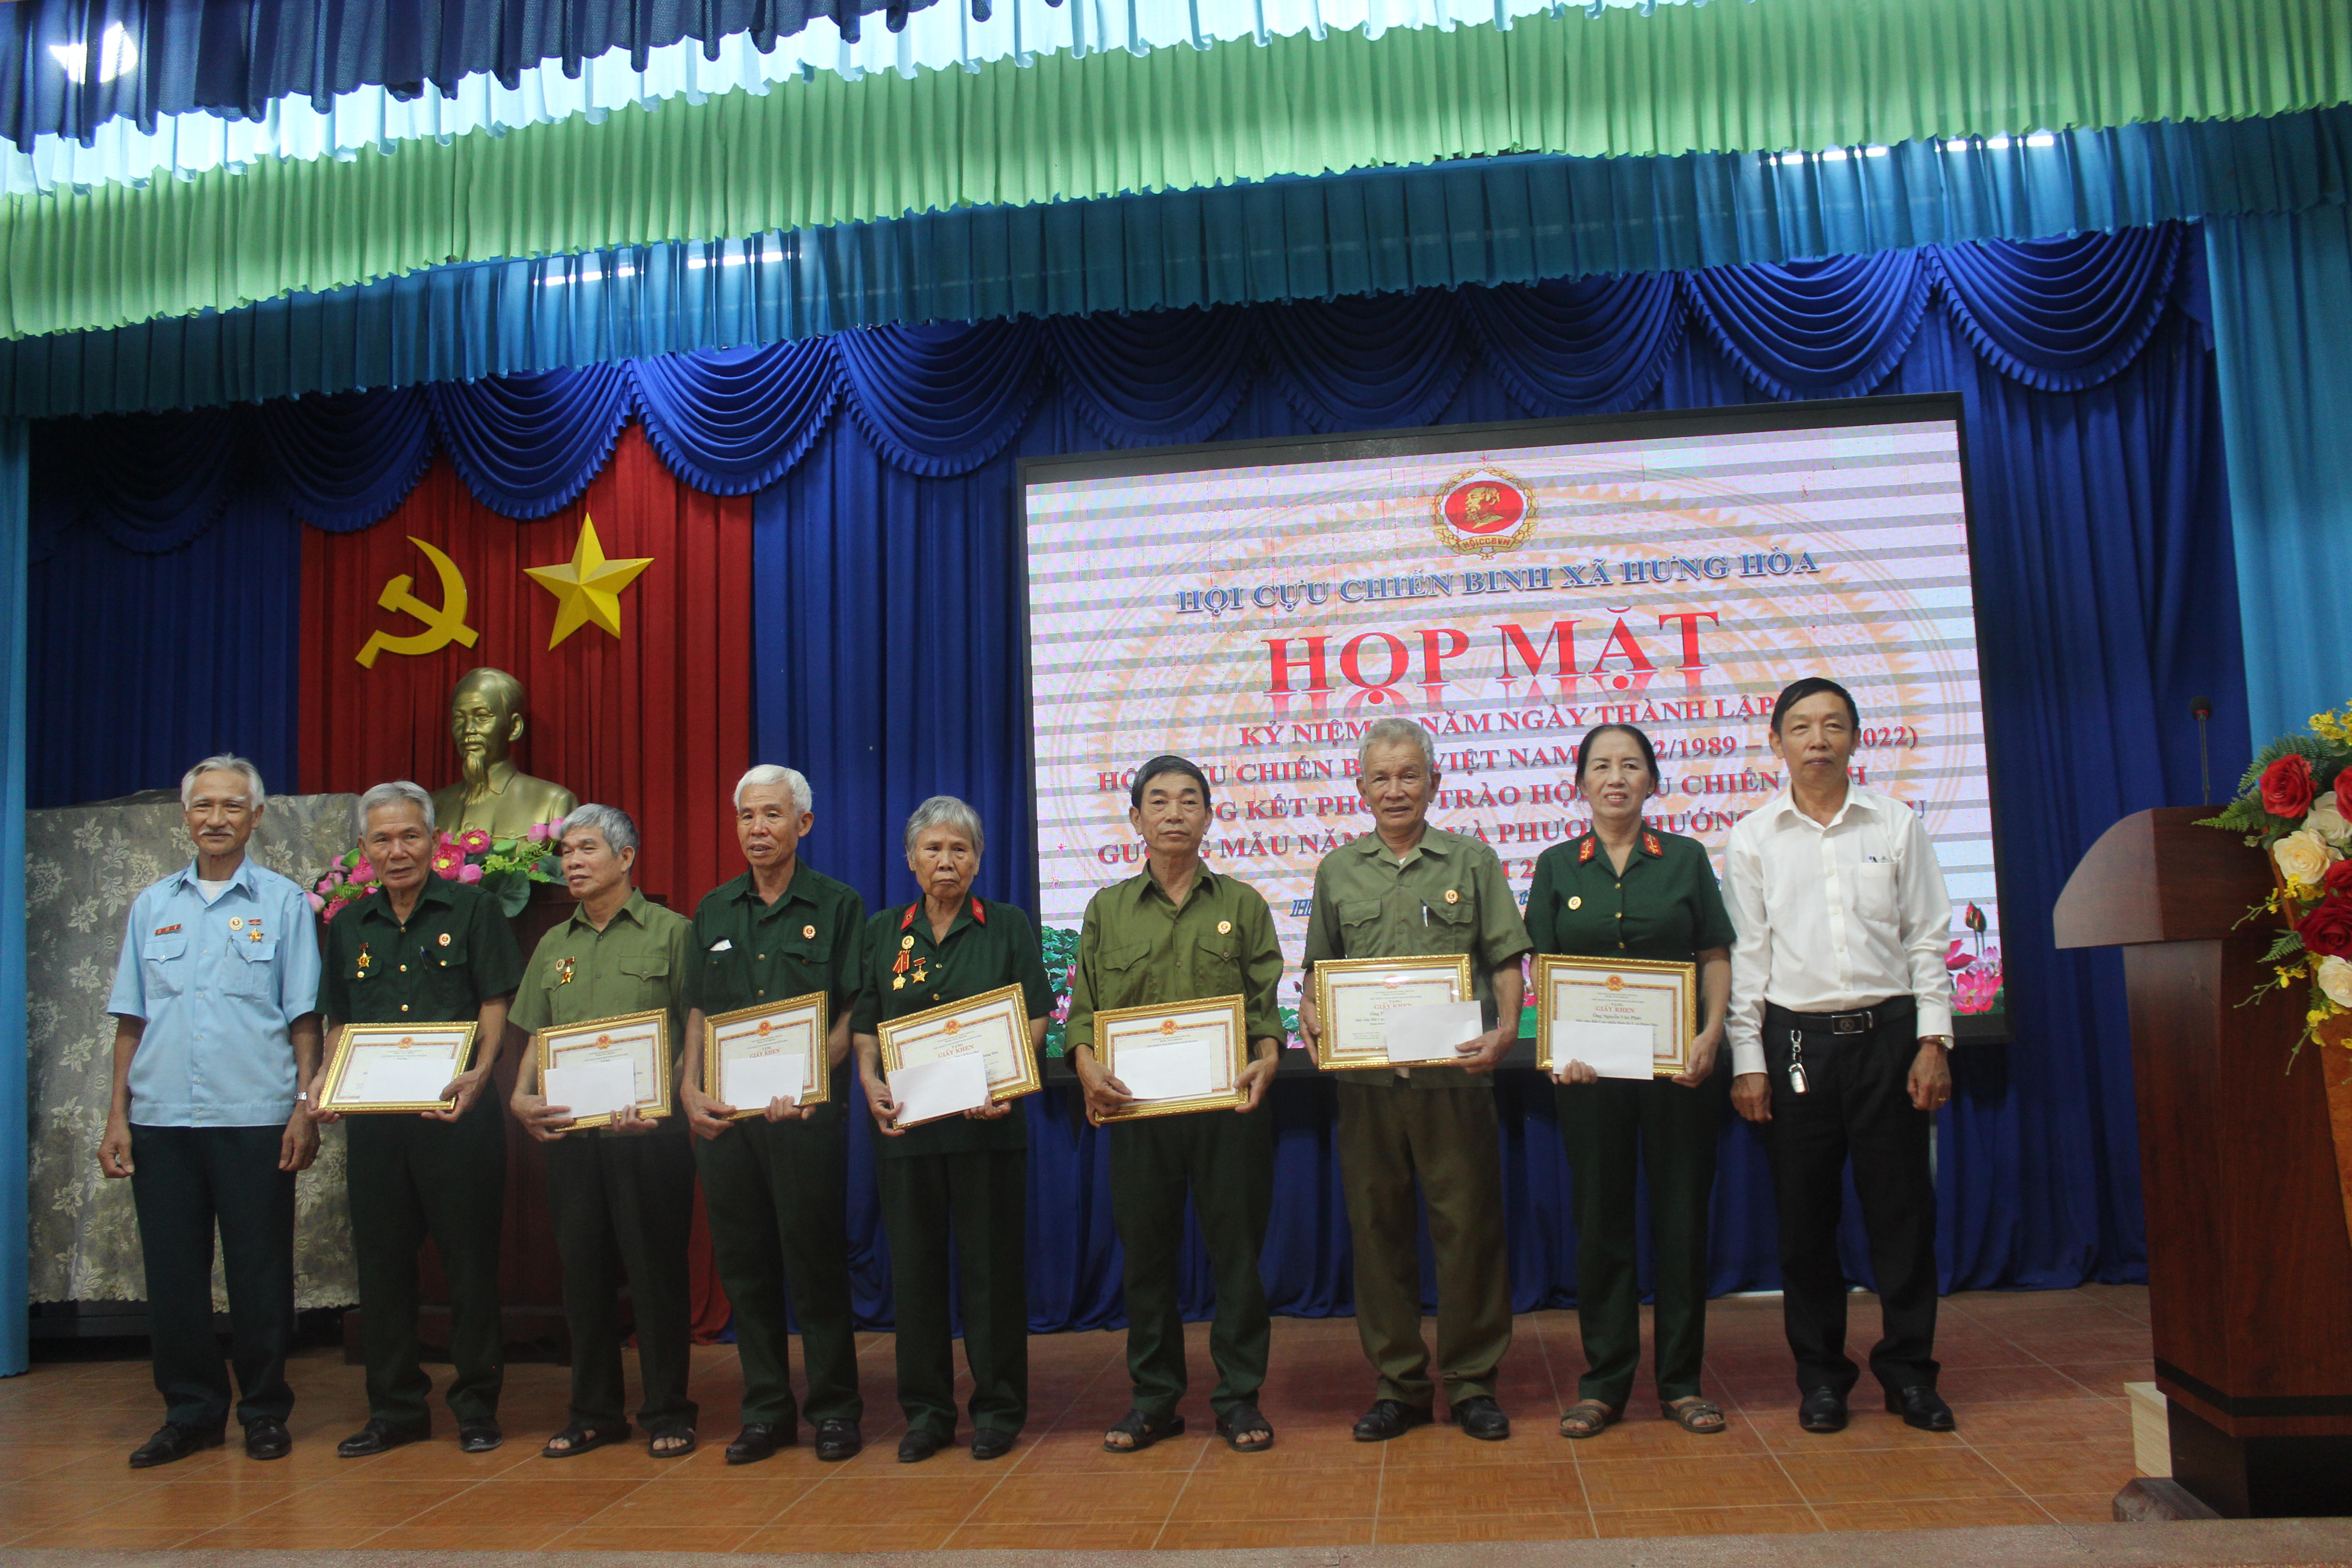 Hội cựu chiến binh xã Hưng Hoà: Họp mặt kỷ niệm 33 ngày thành lập Hội và tổng kết hoạt động phong trào Hội năm 2022, phương hướng nhiệm vụ năm 2023.